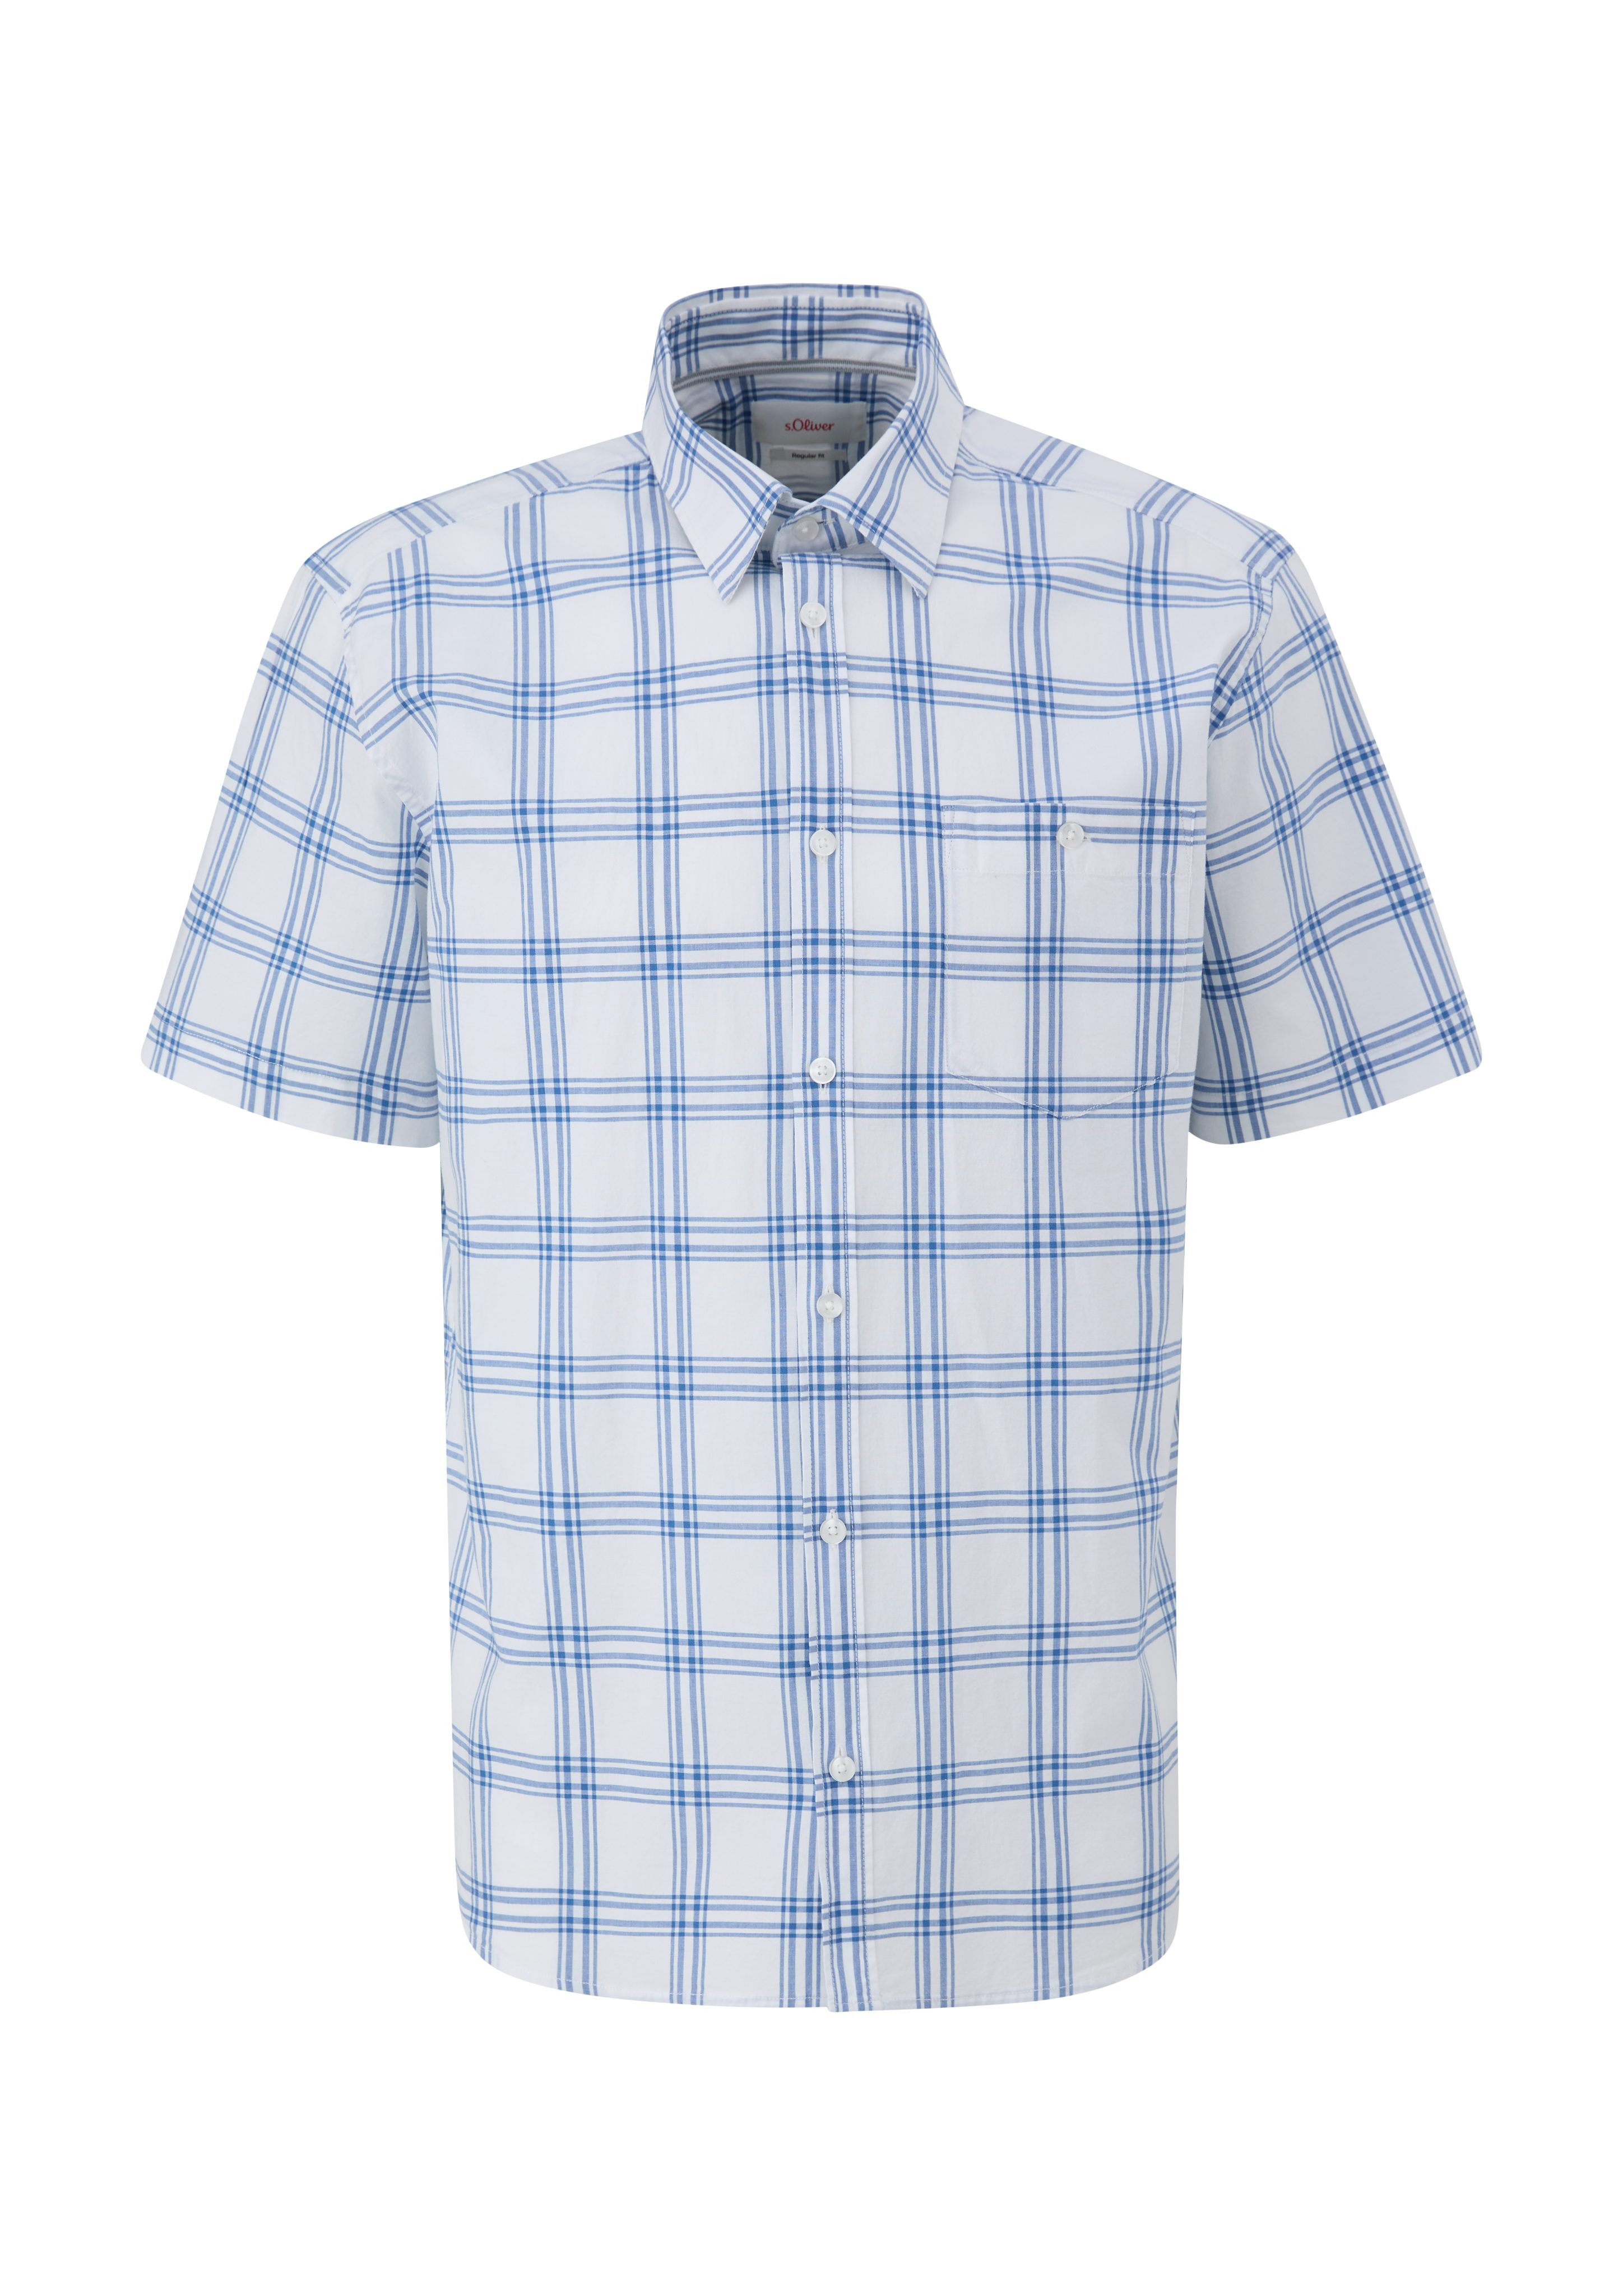 s.Oliver aus Regular: Baumwollstretch Kariertes Kurzarmhemd Hemd hellblau